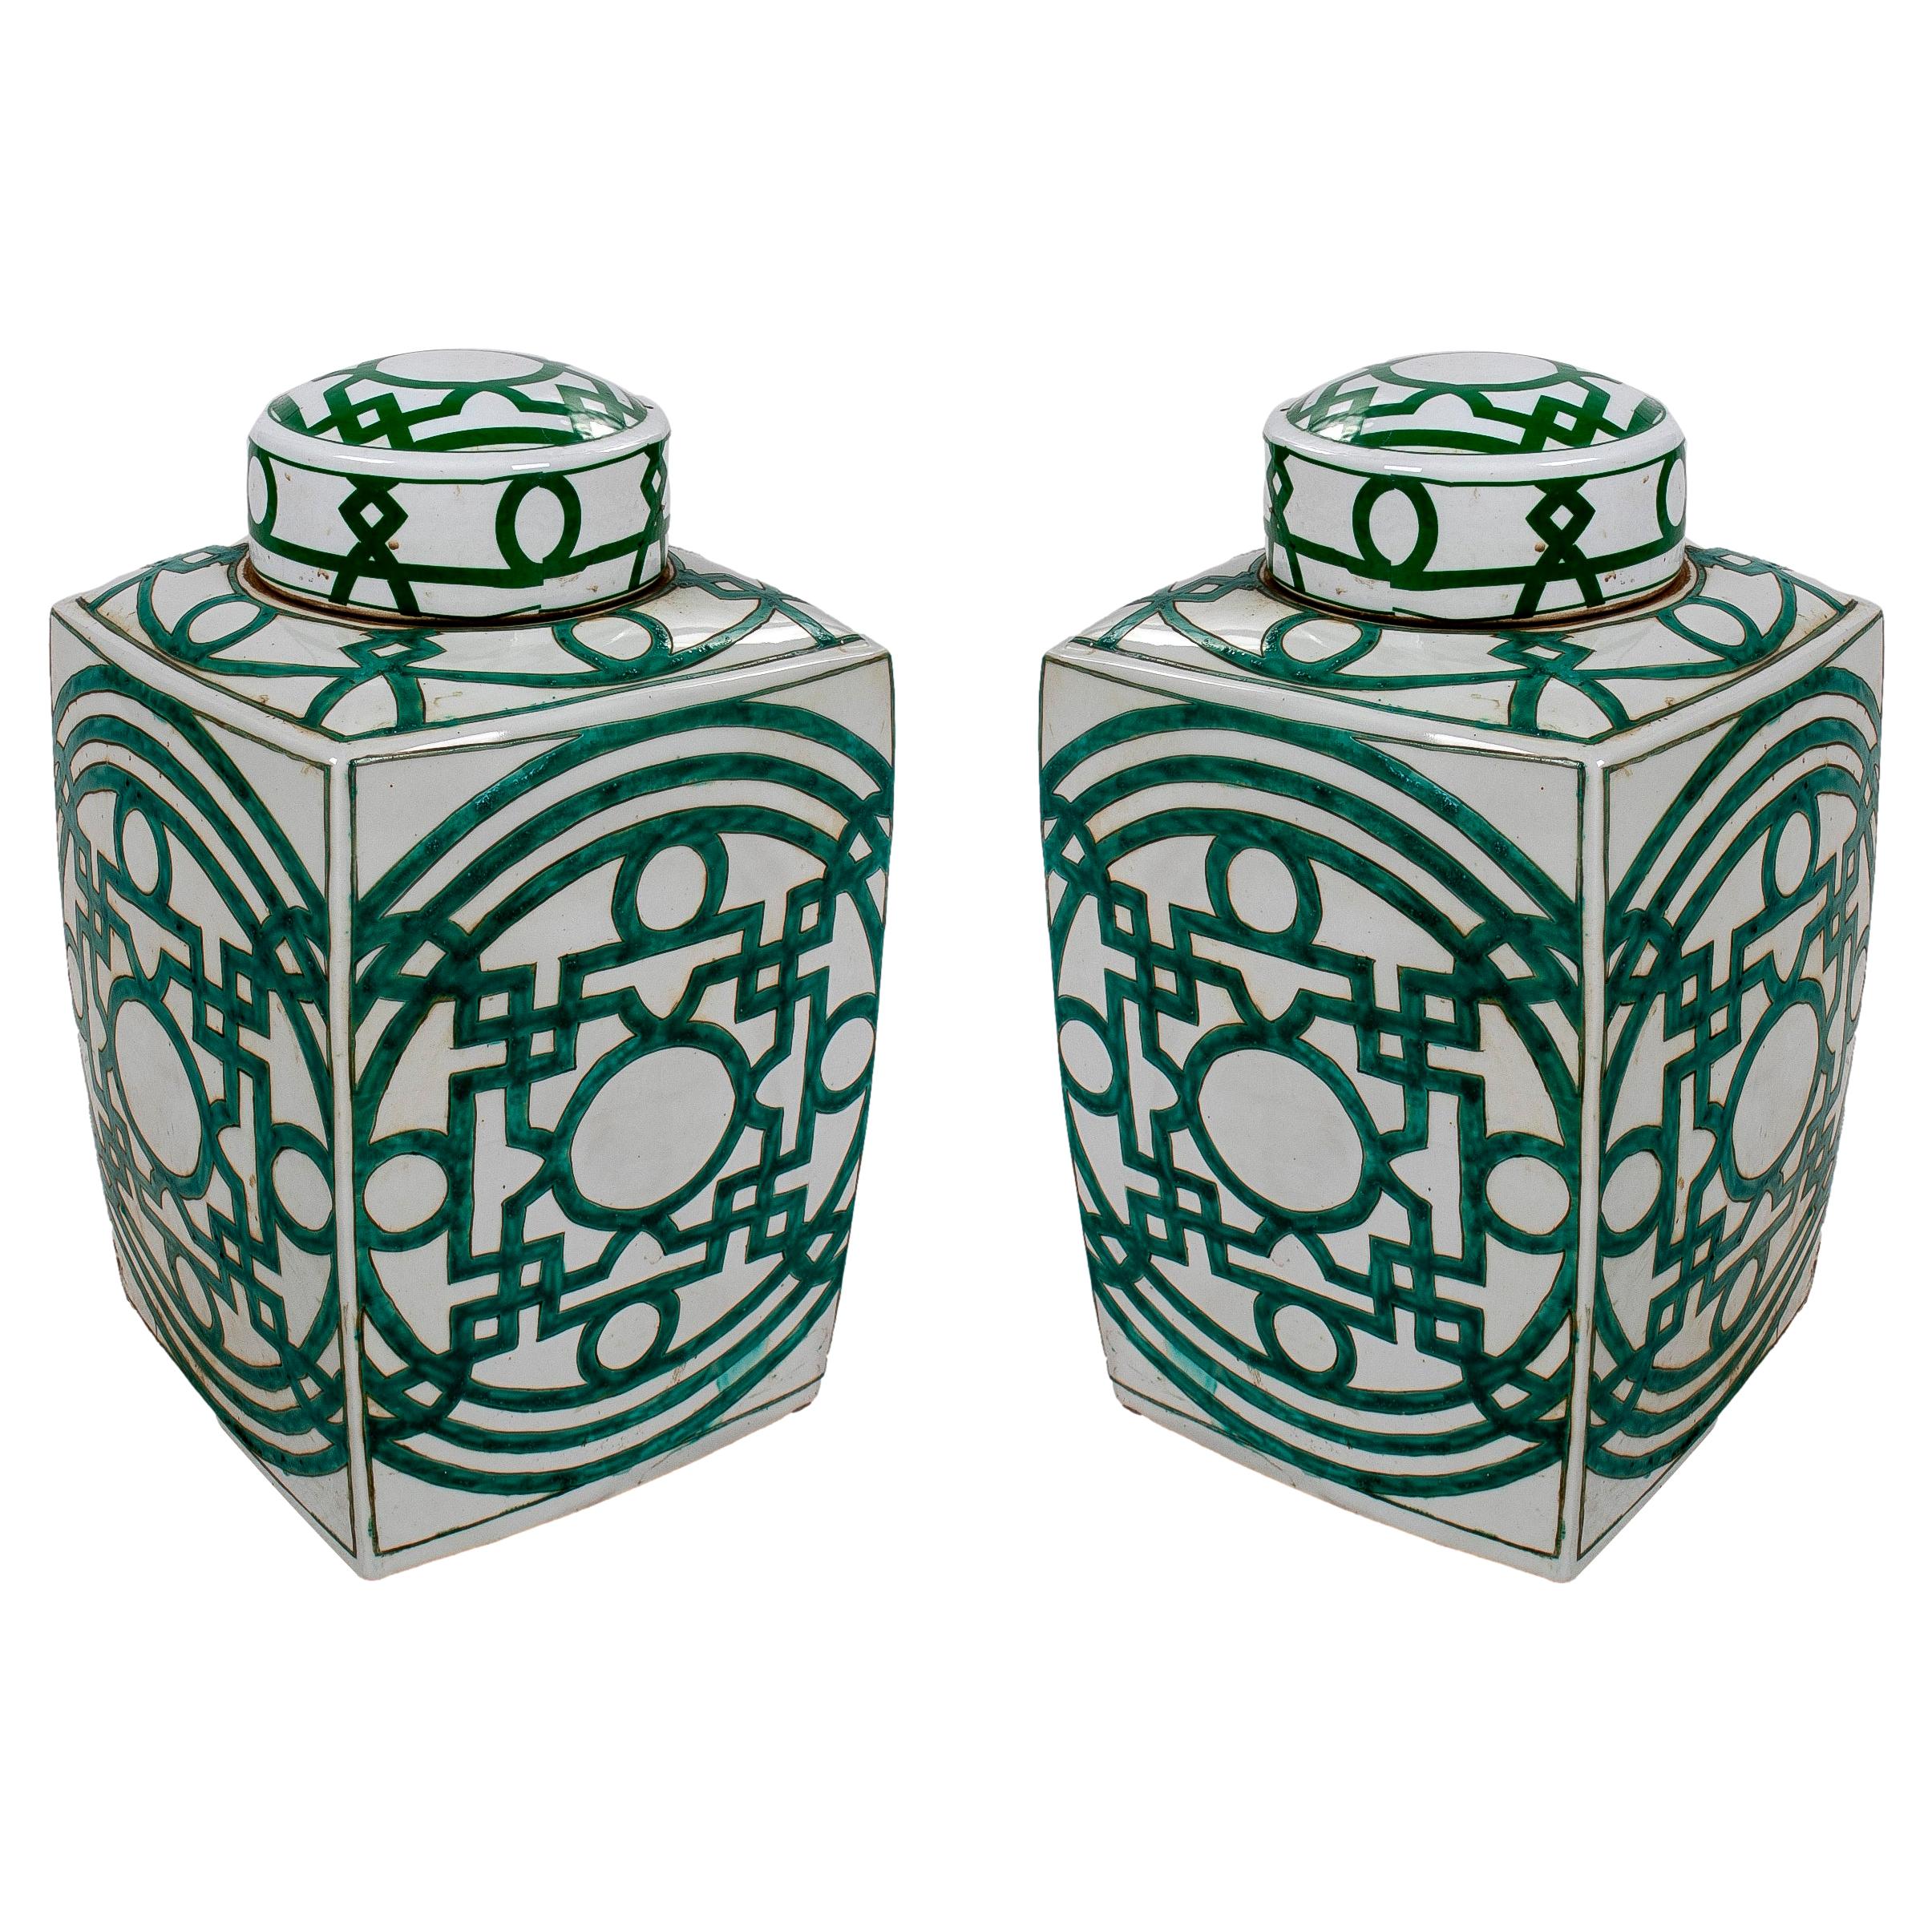 Paire d'urnes asiatiques en porcelaine émaillée blanche avec décorations et couvercles géométriques vertes